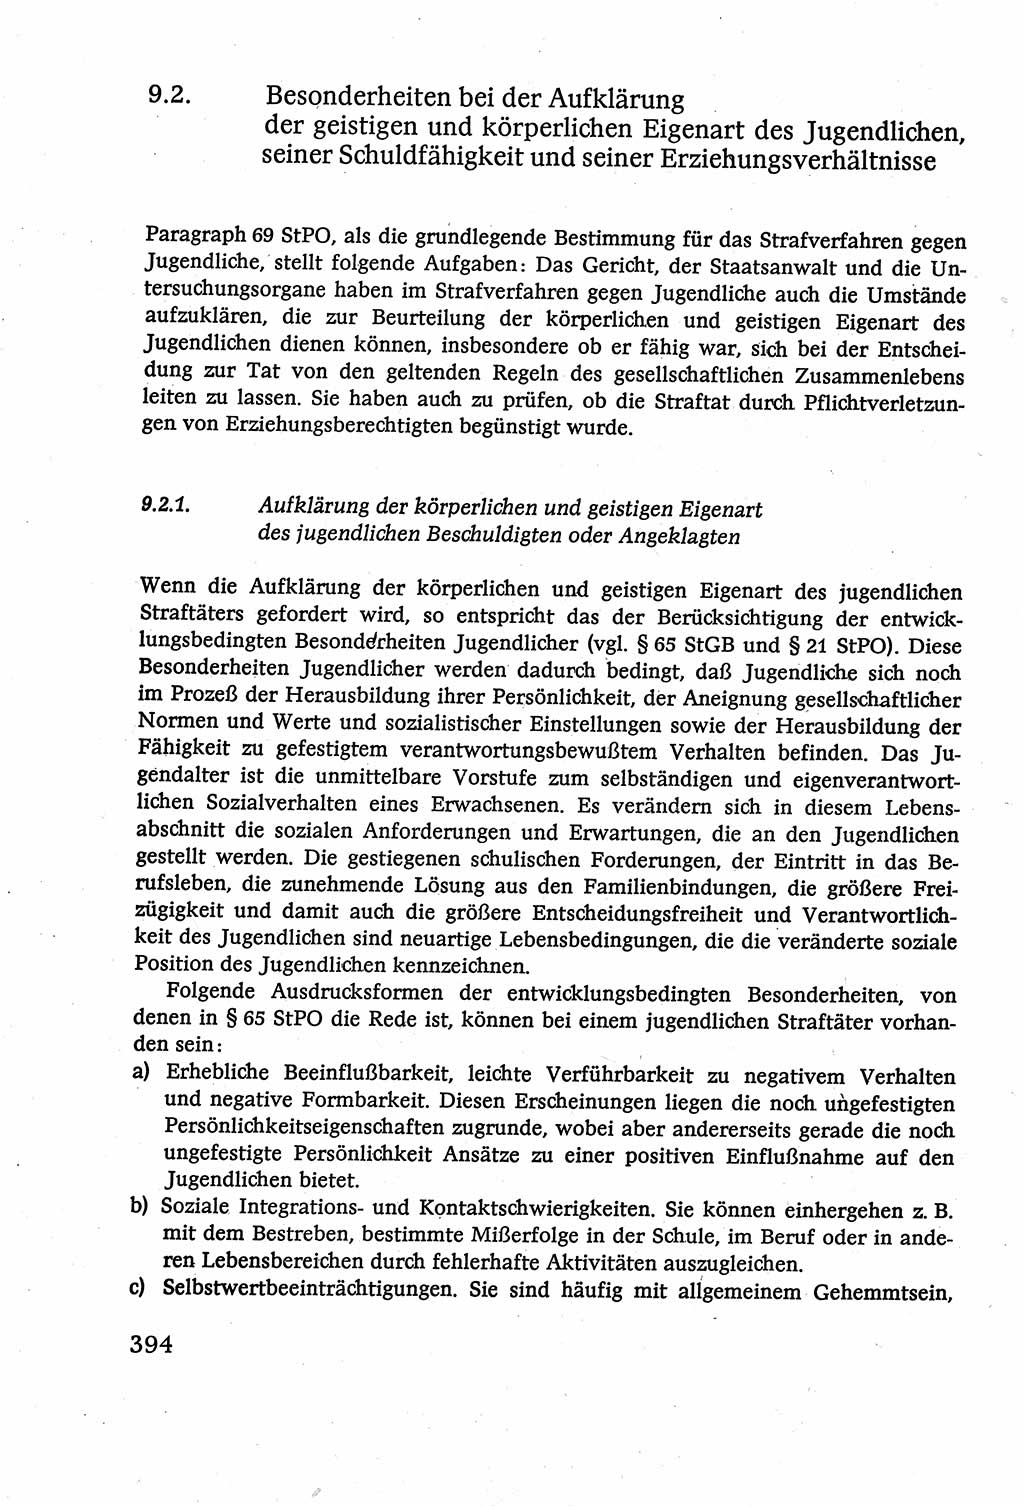 Strafverfahrensrecht [Deutsche Demokratische Republik (DDR)], Lehrbuch 1977, Seite 394 (Strafverf.-R. DDR Lb. 1977, S. 394)